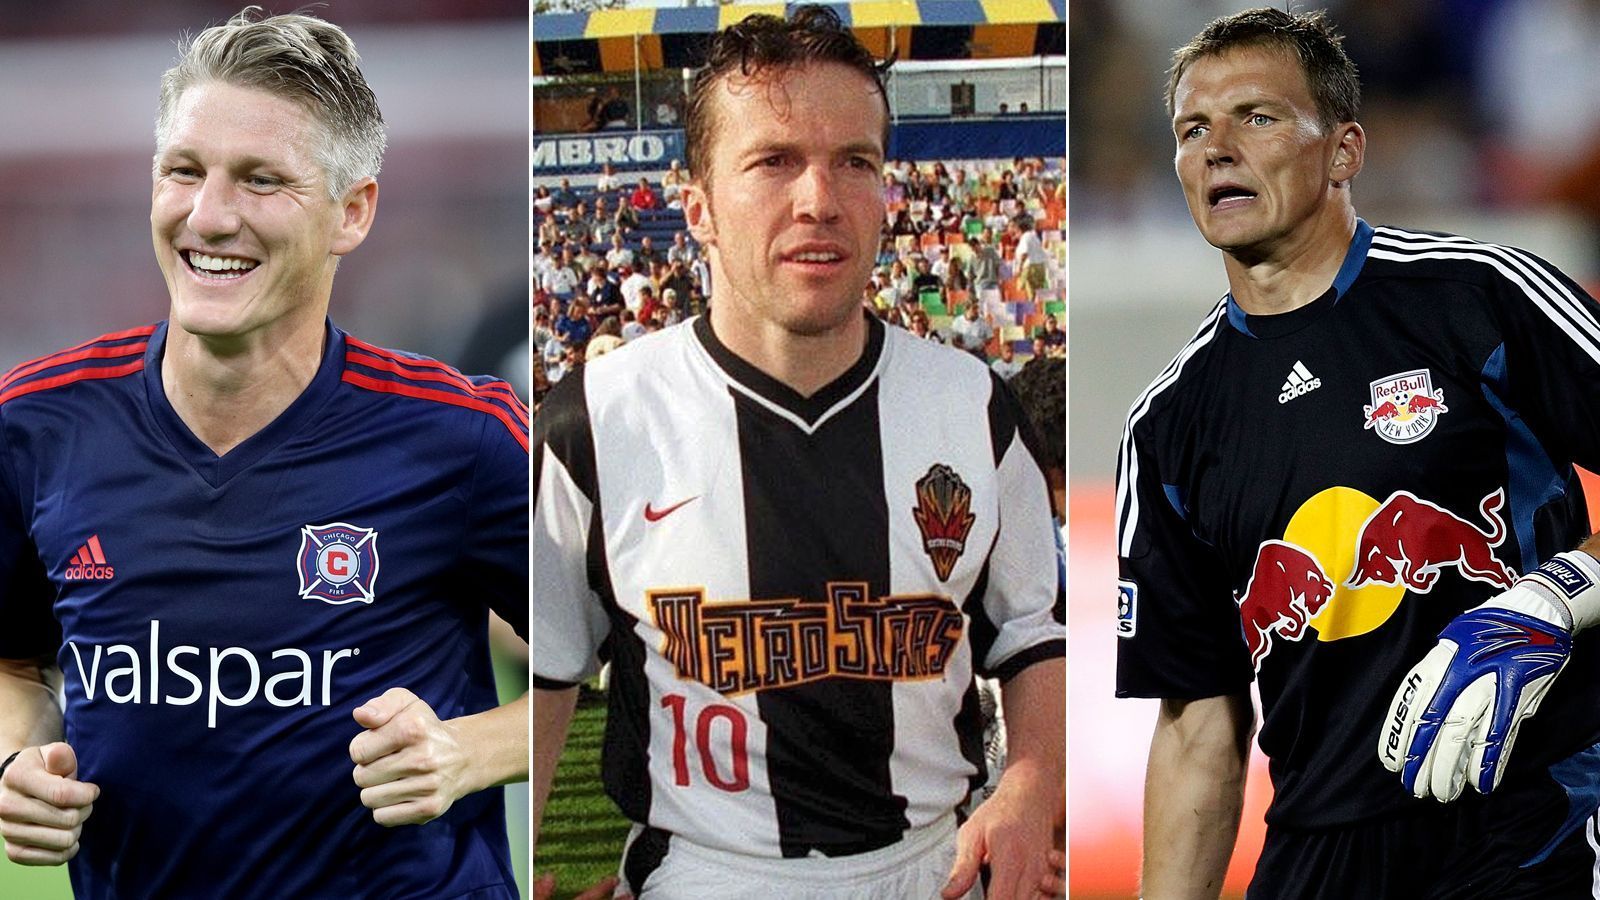 
                <strong>Diese deutschen Stars spielten bzw. spielen in der MLS</strong><br>
                Die nordamerikanische Fußball-Liga MLS startet gerade in die Saison 2020. In Vergangenheit spielten schon einige richtig große Namen aus Deutschland mit. ran.de zeigt die deutschen MLS-Stars aus Vergangenheit und Gegenwart. (Stand: 5. März 2020)
              